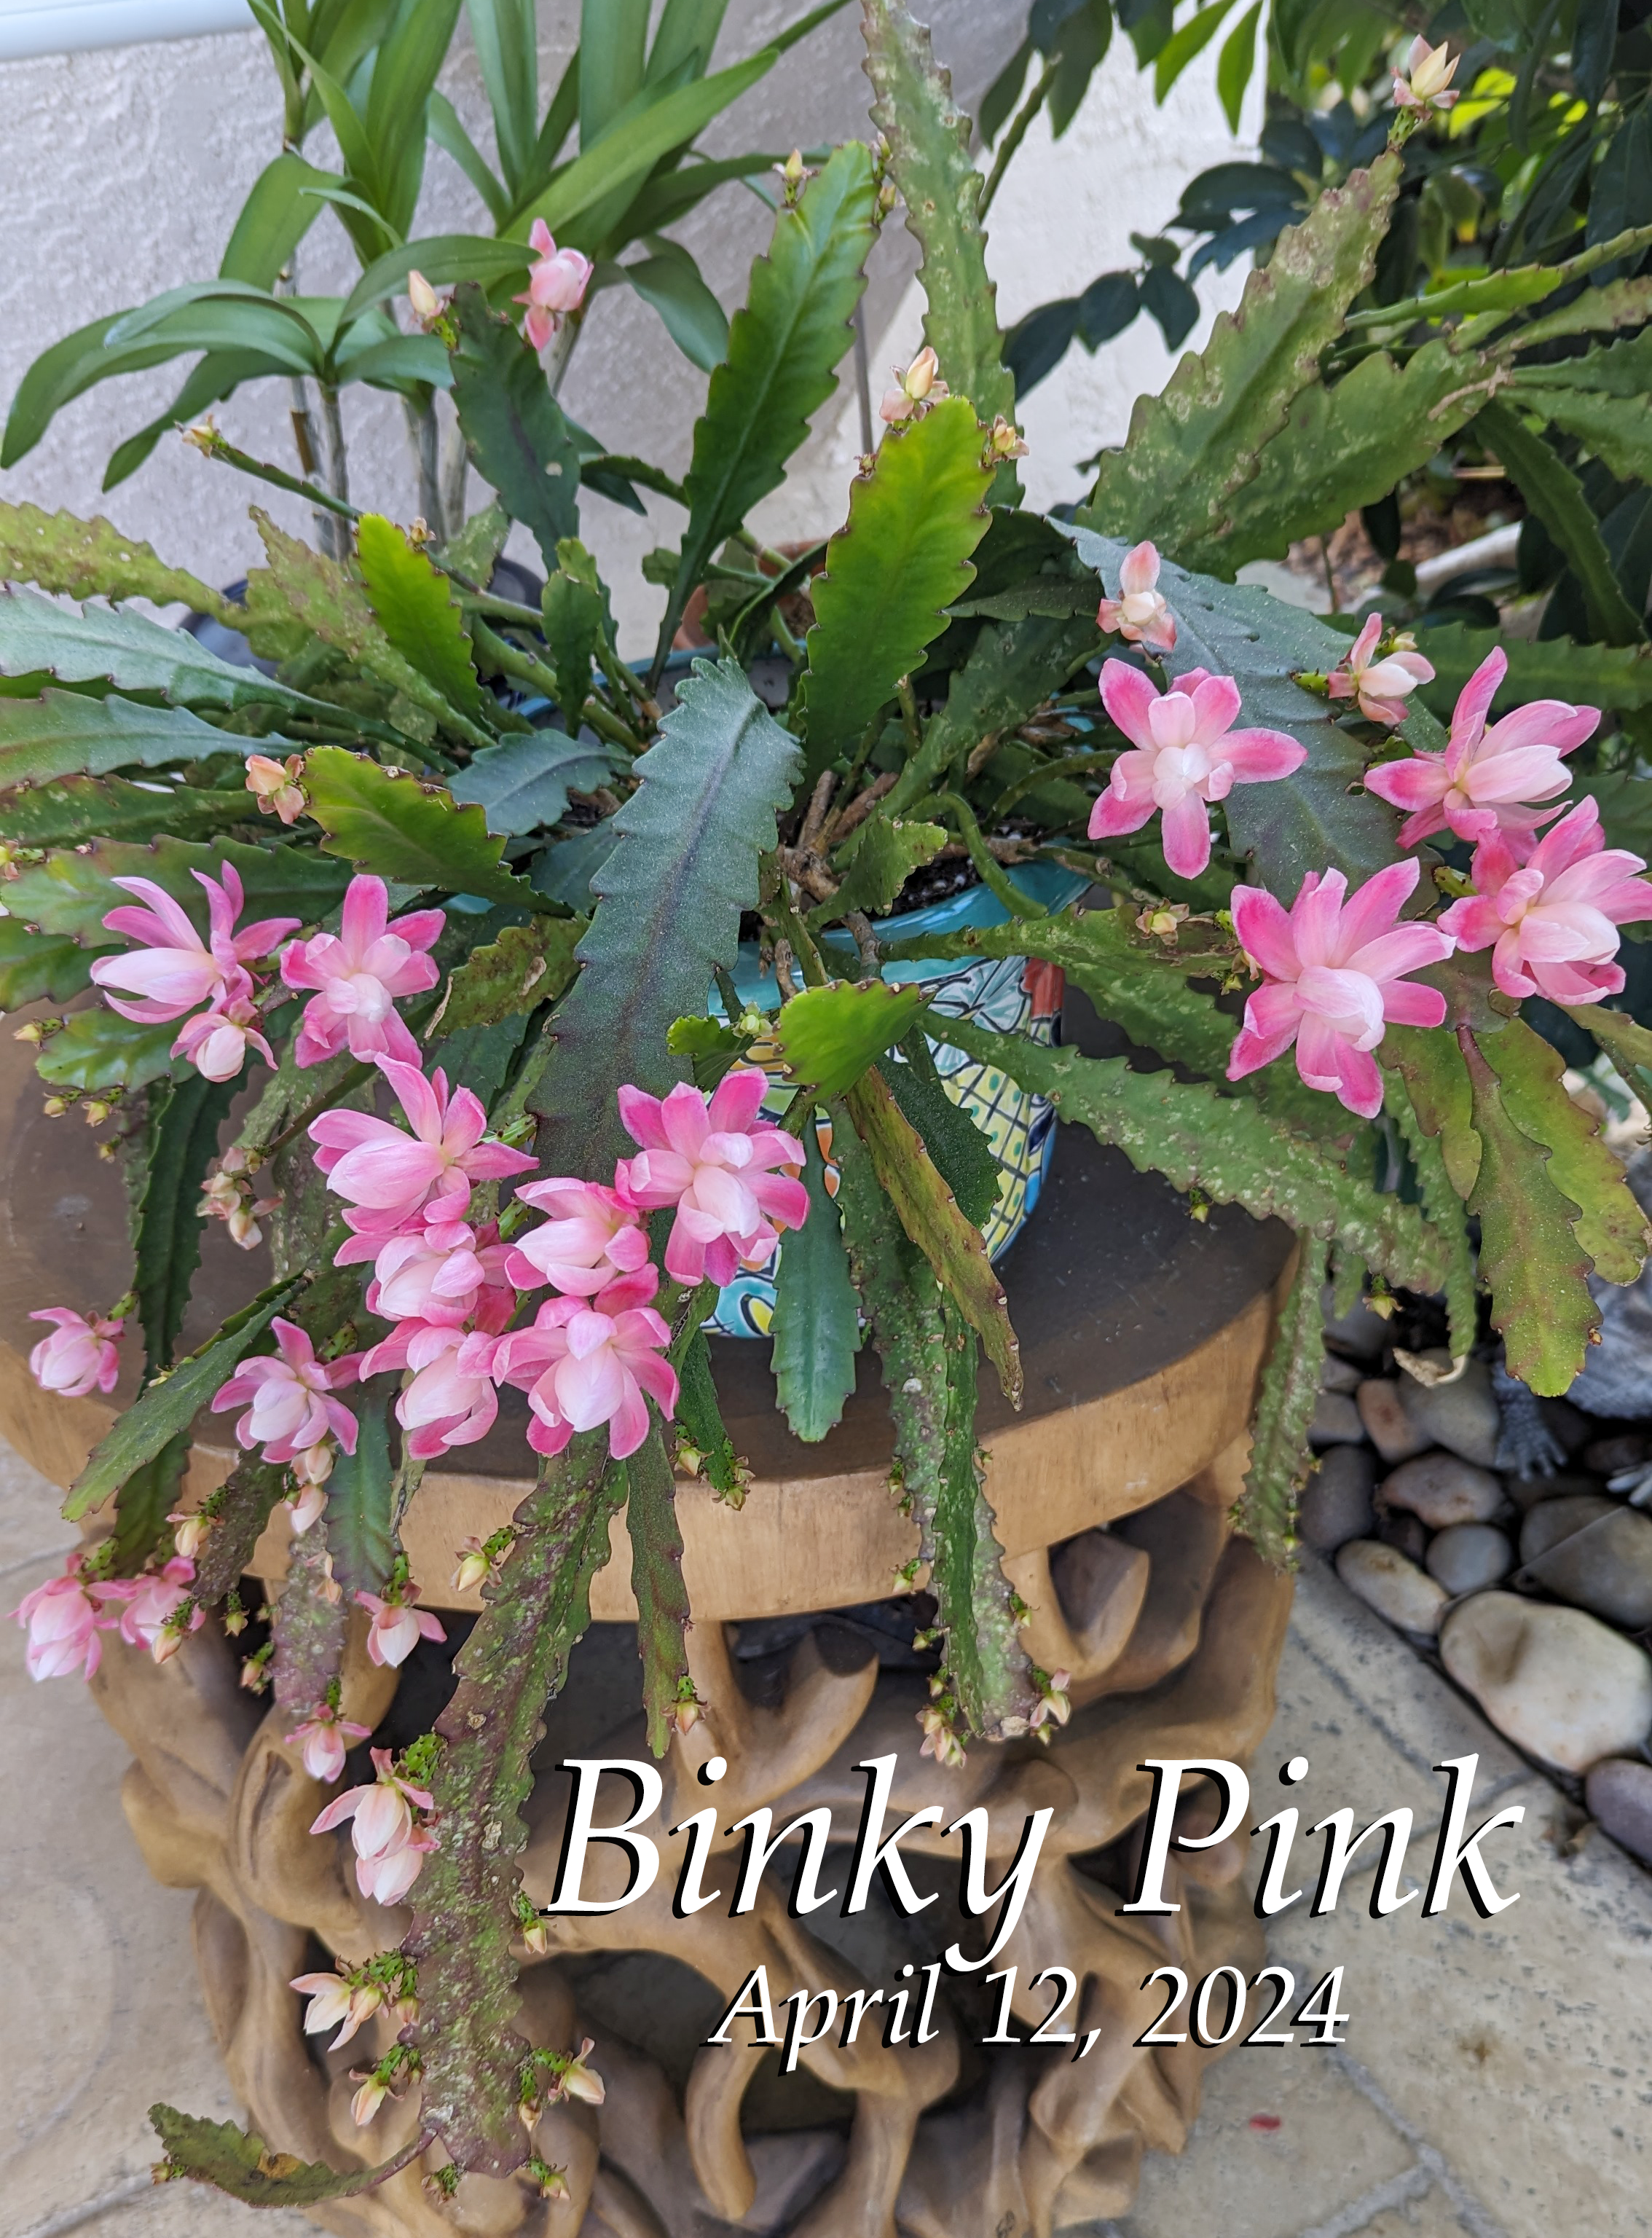 Binky Pink